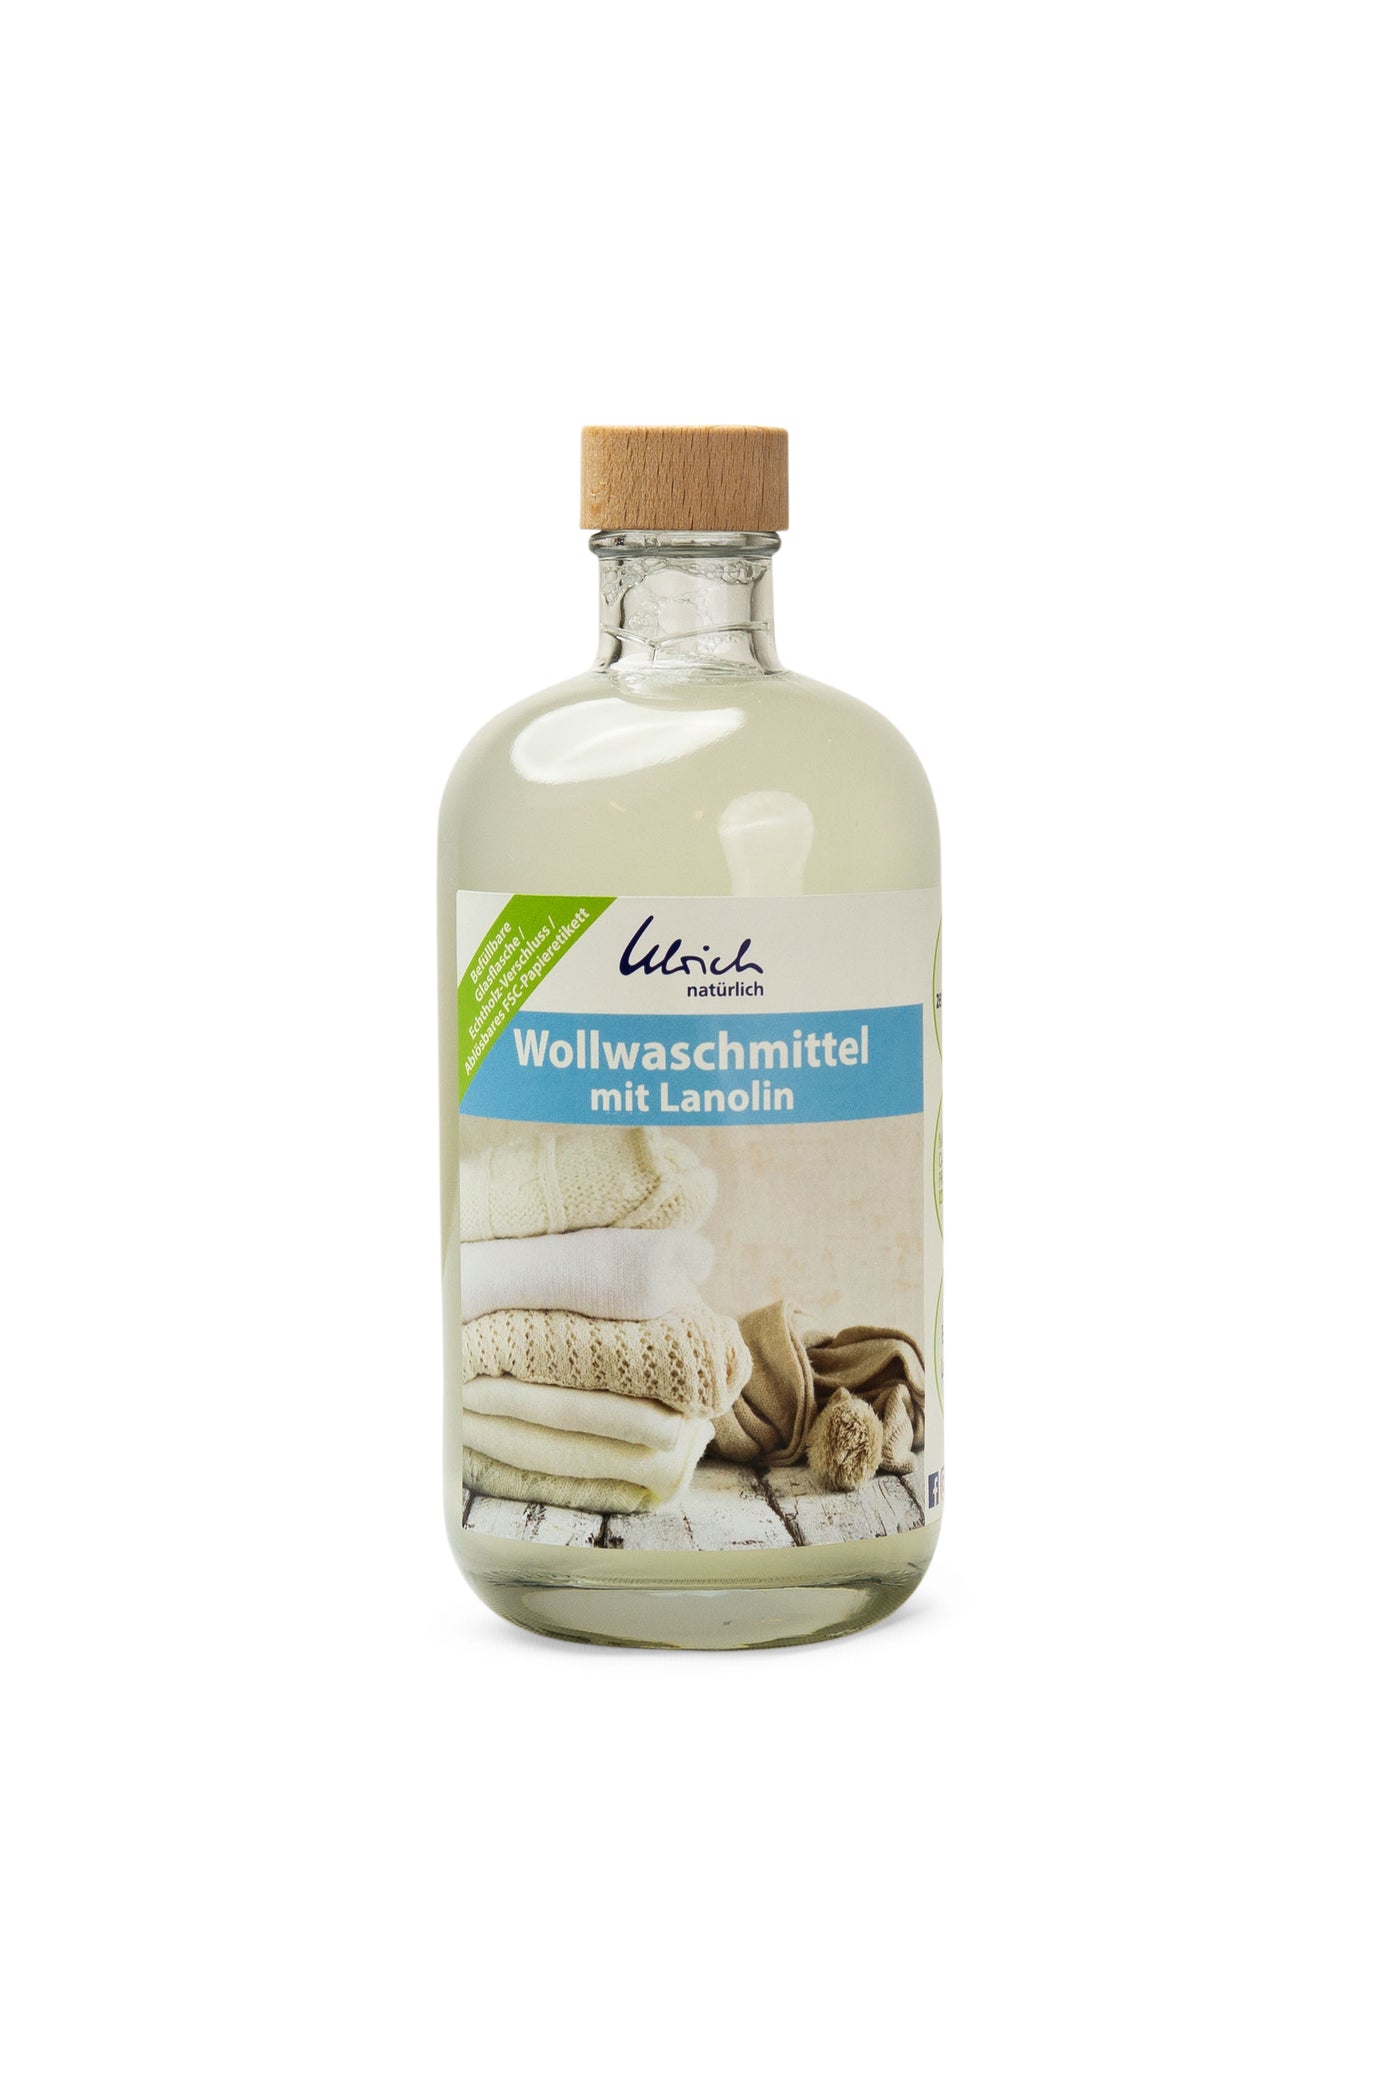 W. Ulrich GmbH Wool Detergent 500ml Care & Clean